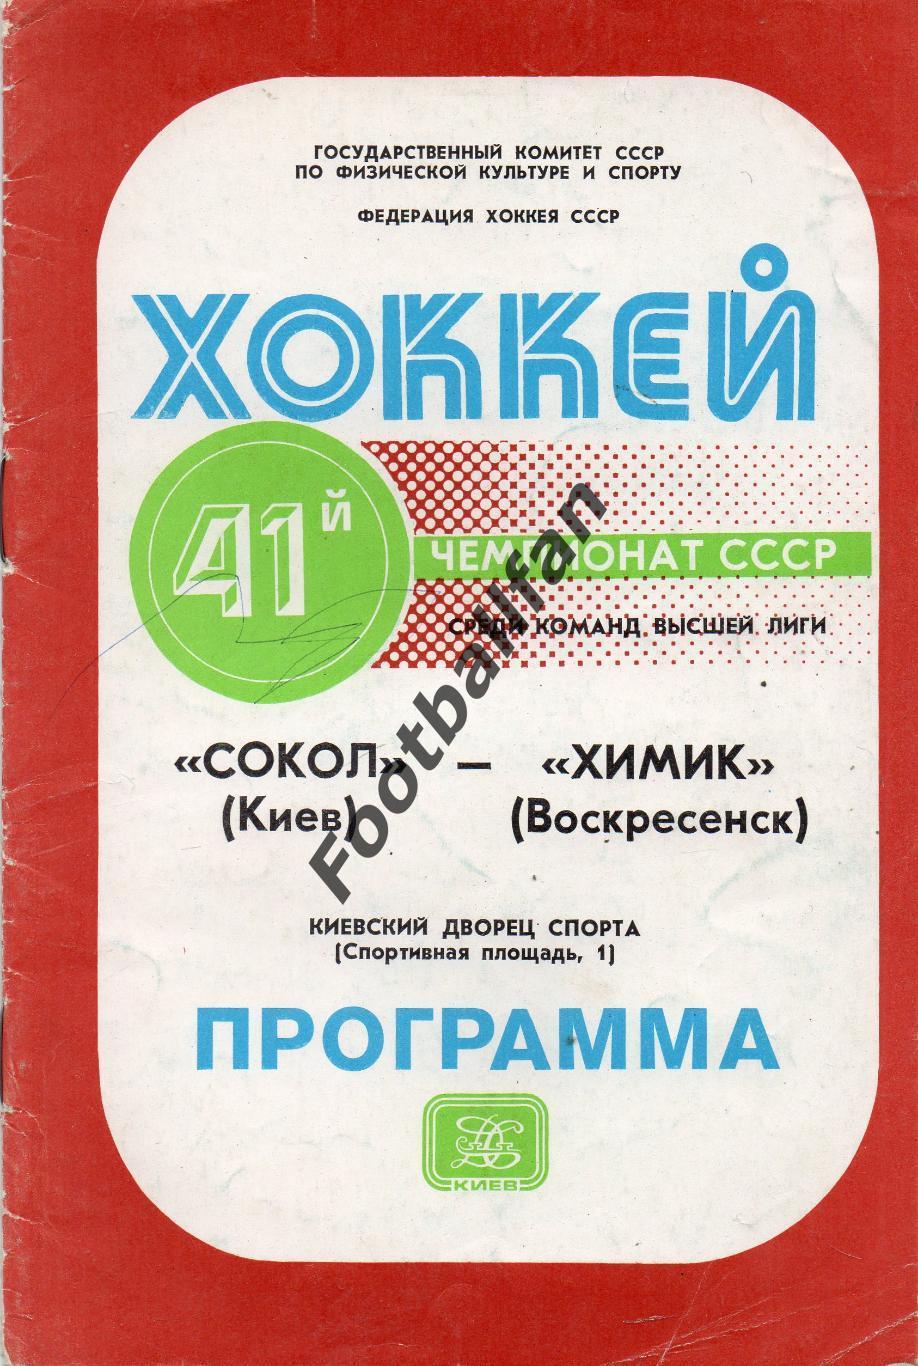 Сокол Киев - Химик Воскресенск 22.11.1986